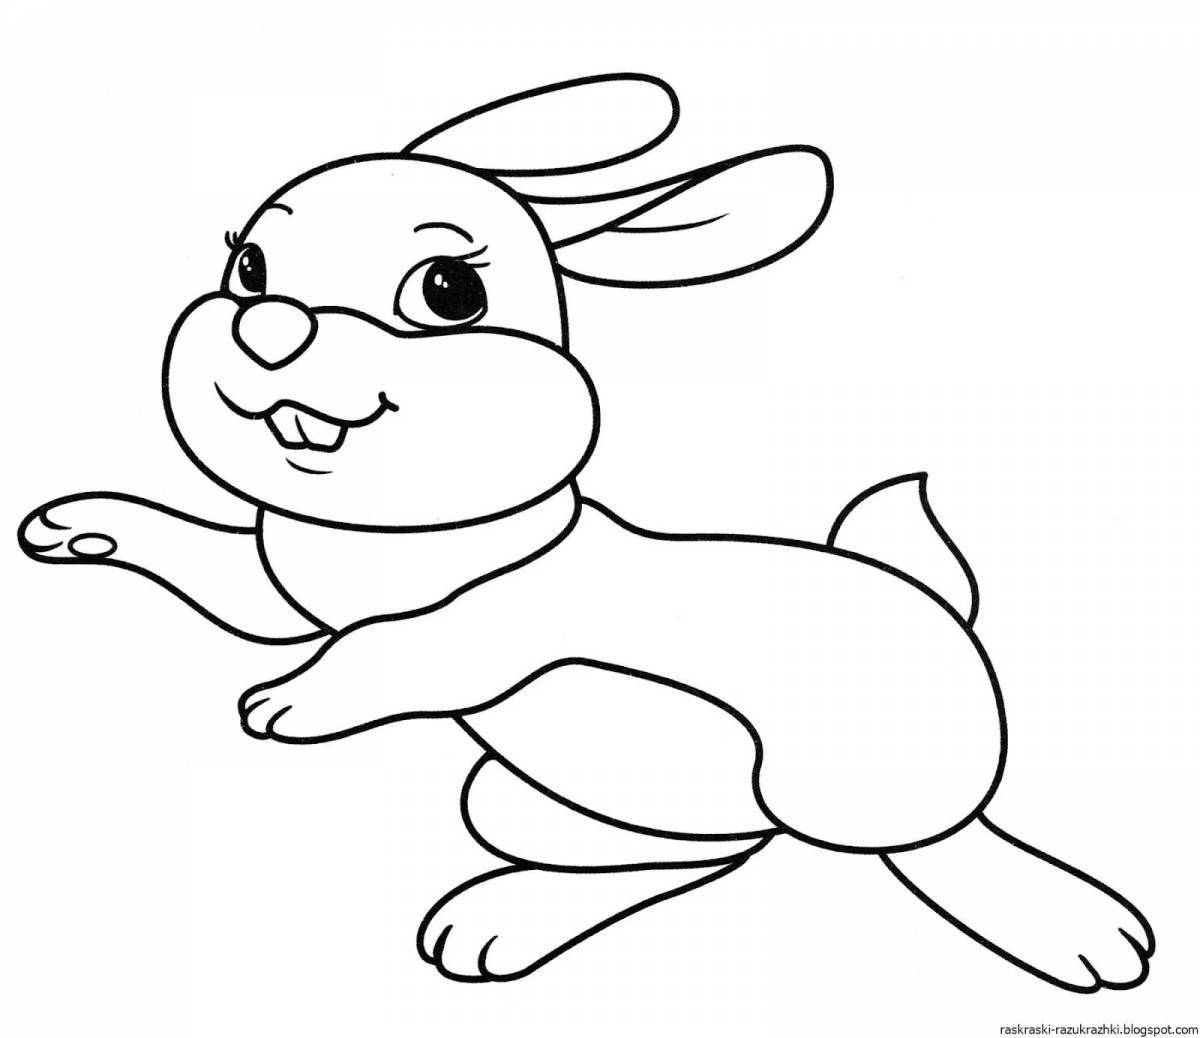 Остроумная раскраска кролик для детей 3 4